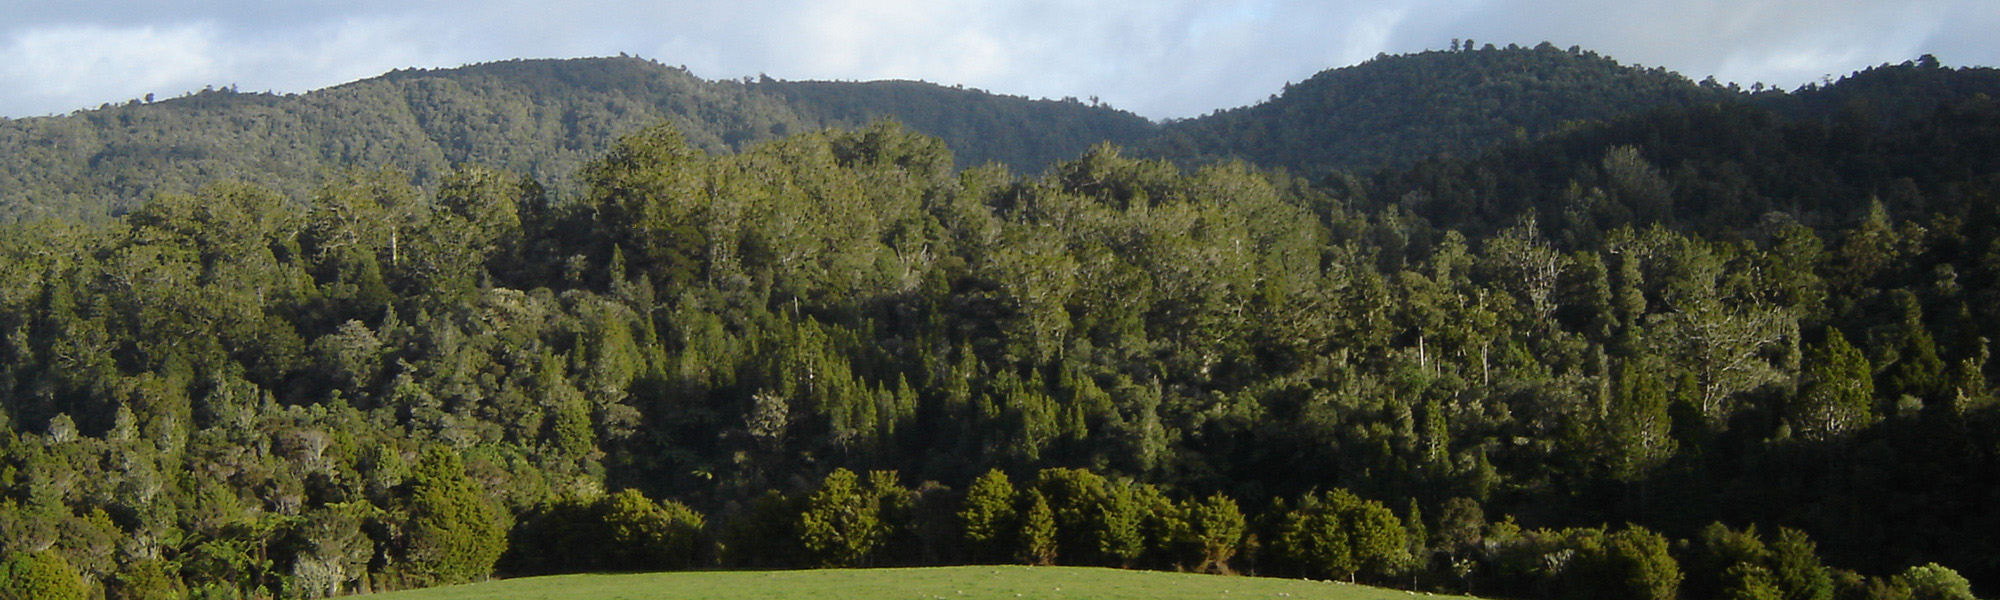 Puketi Forest, Northland New Zealand - kauri trees in foreground, Puketi Plateau on skyline